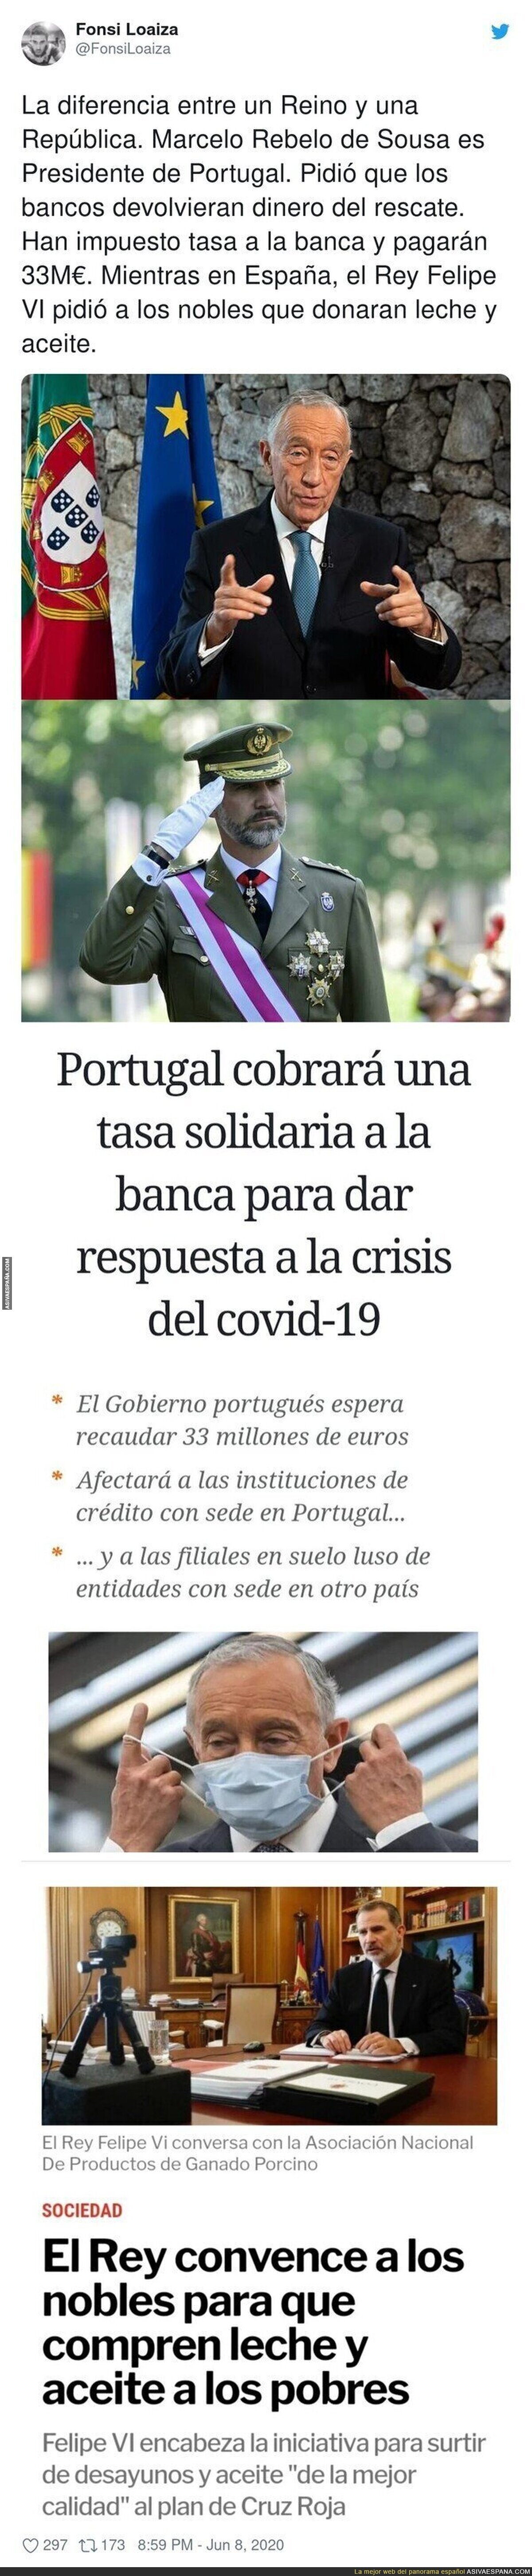 Que envidia de Portugal viendo estas noticias